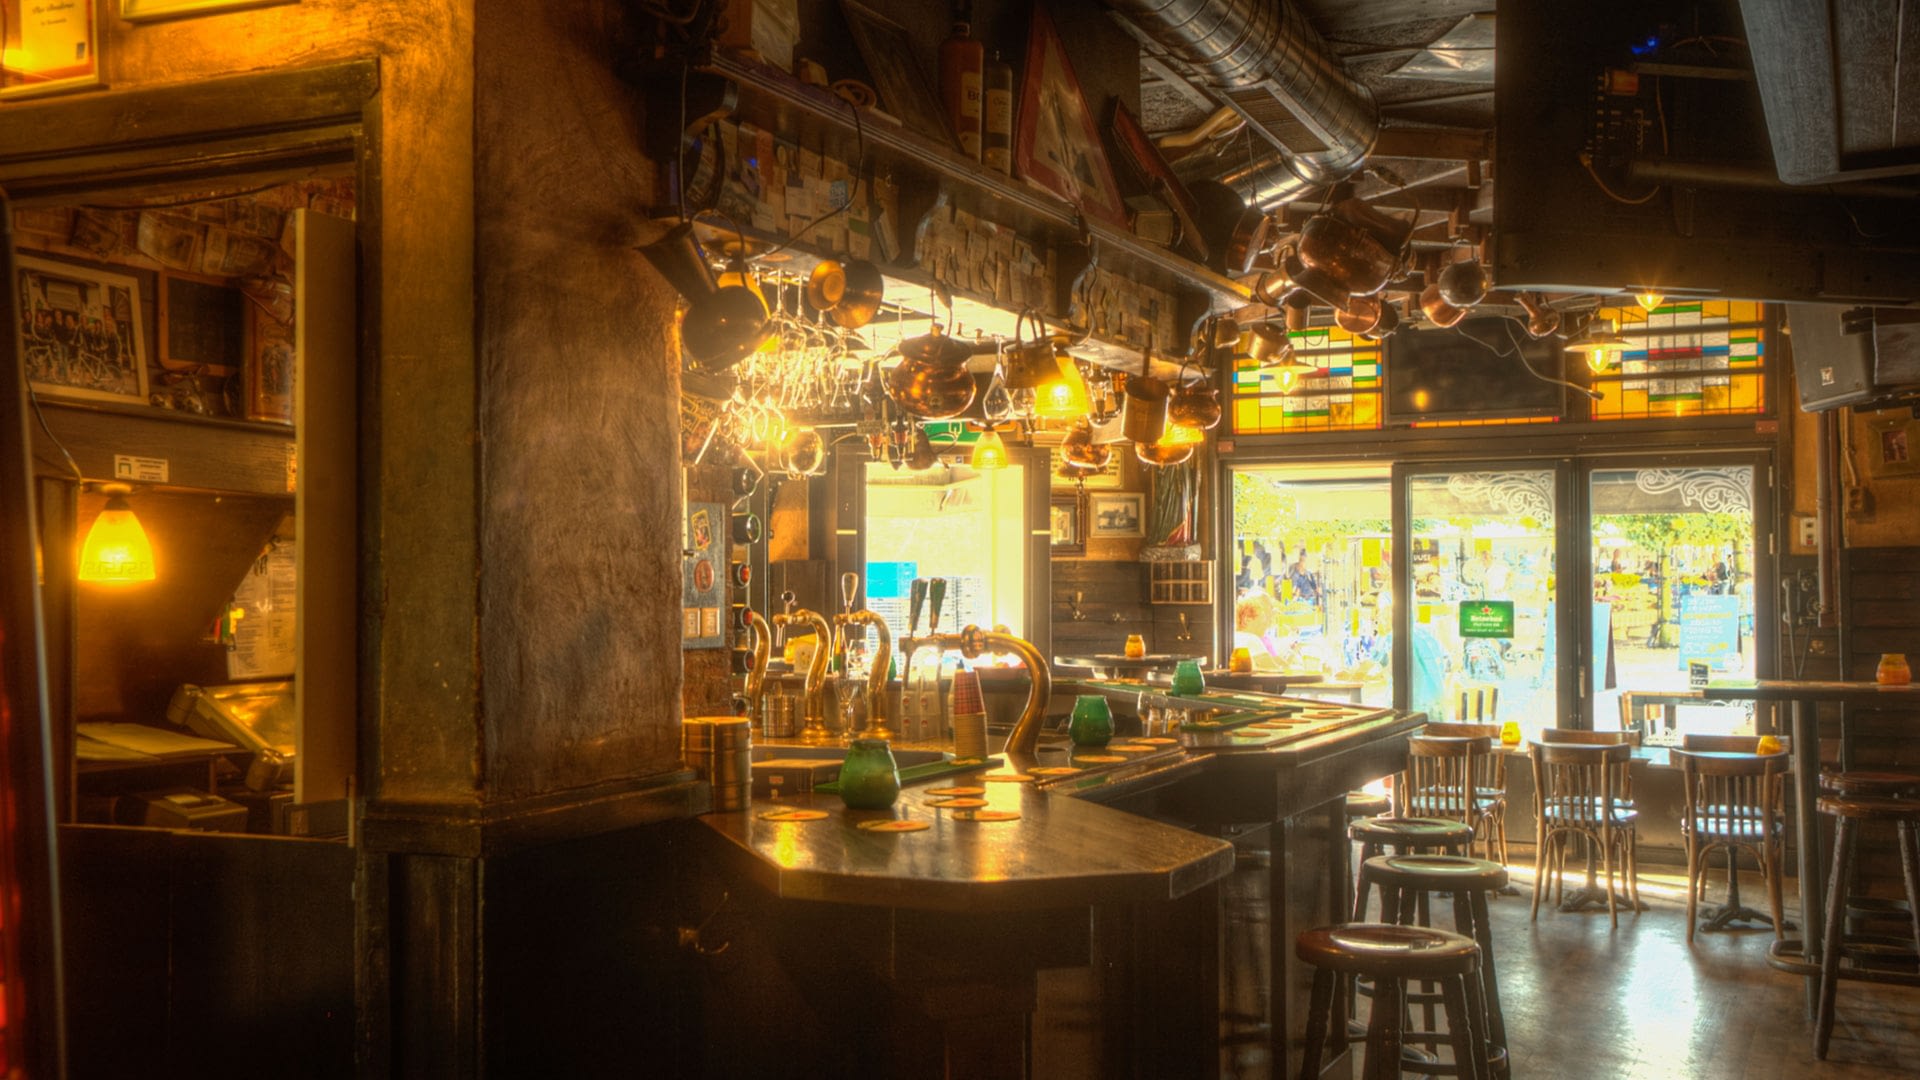 Interieur van bruine kroeg De Slimmerick in Naaldwijk met een bruine bar, barkrukken , zacht licht en hangende glazen boven de bar